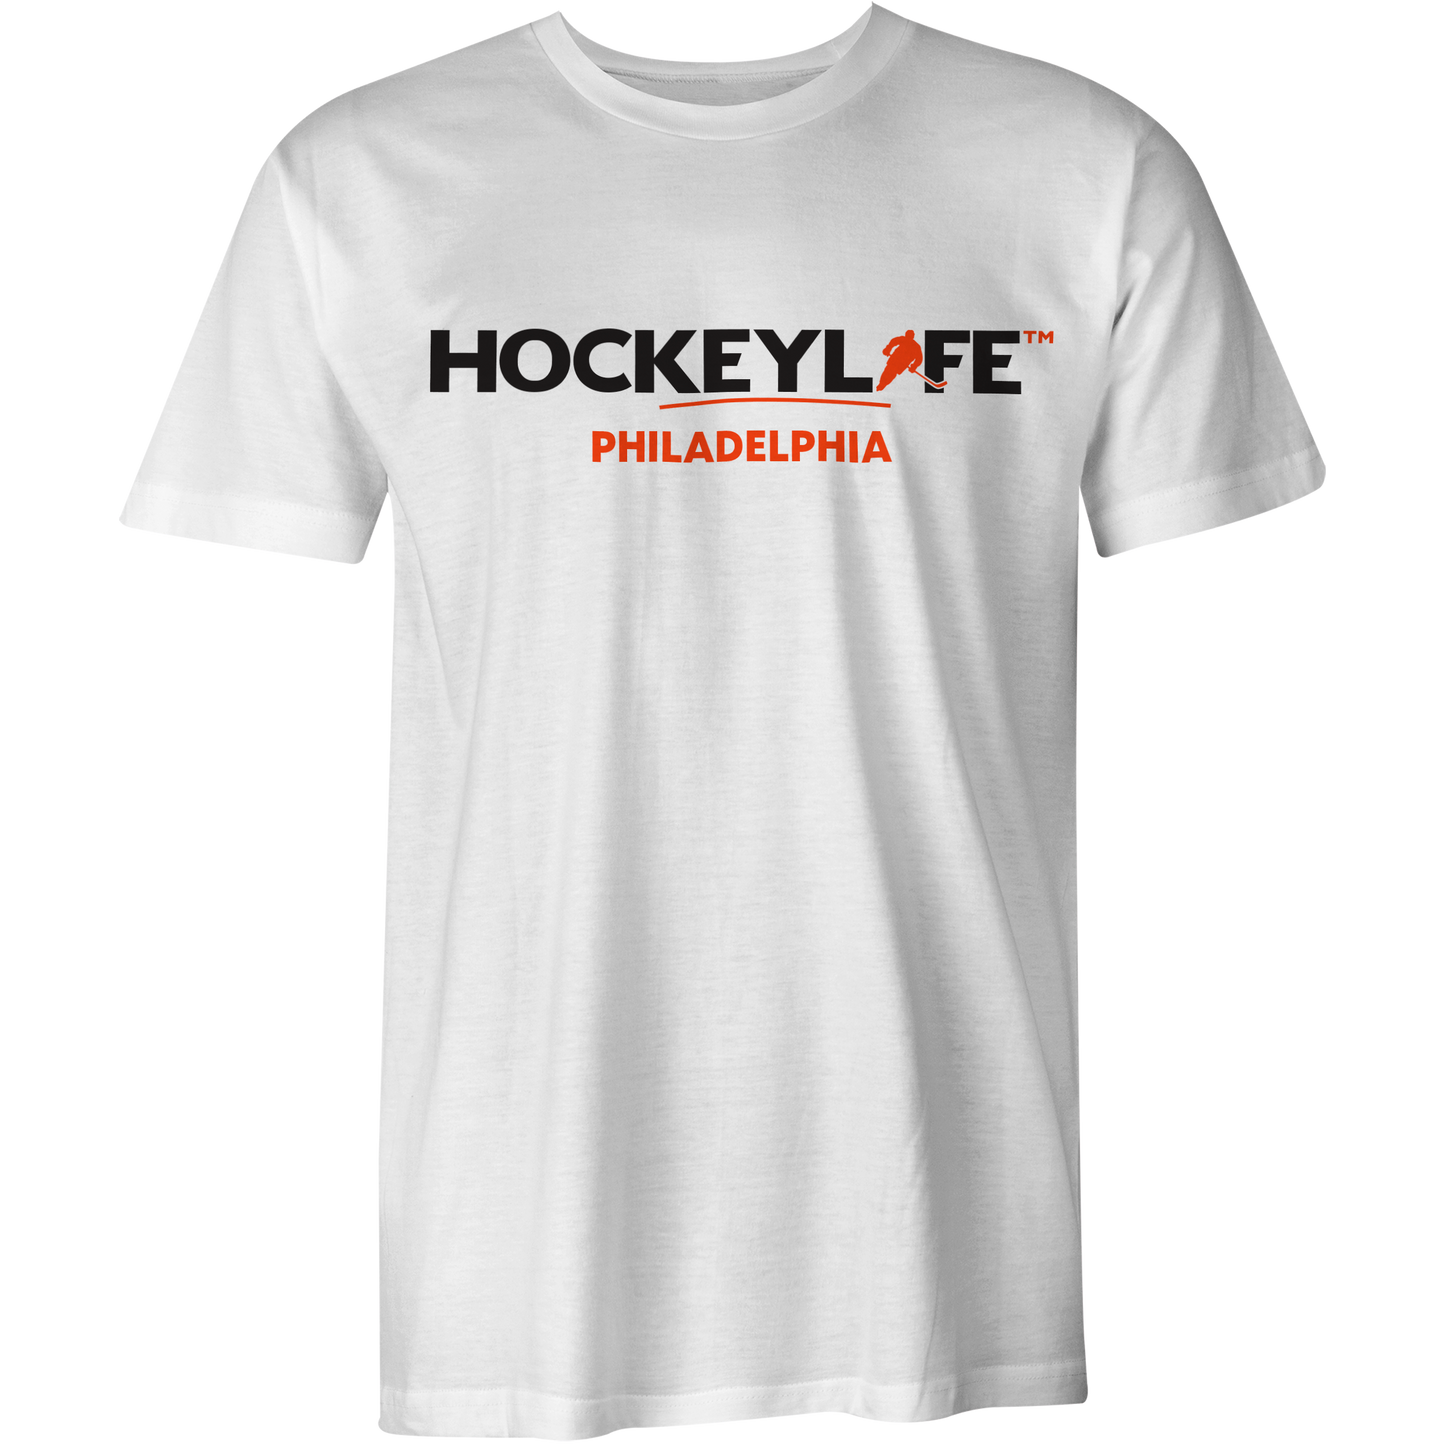 HockeyLife Philadelphia Tee Shirt